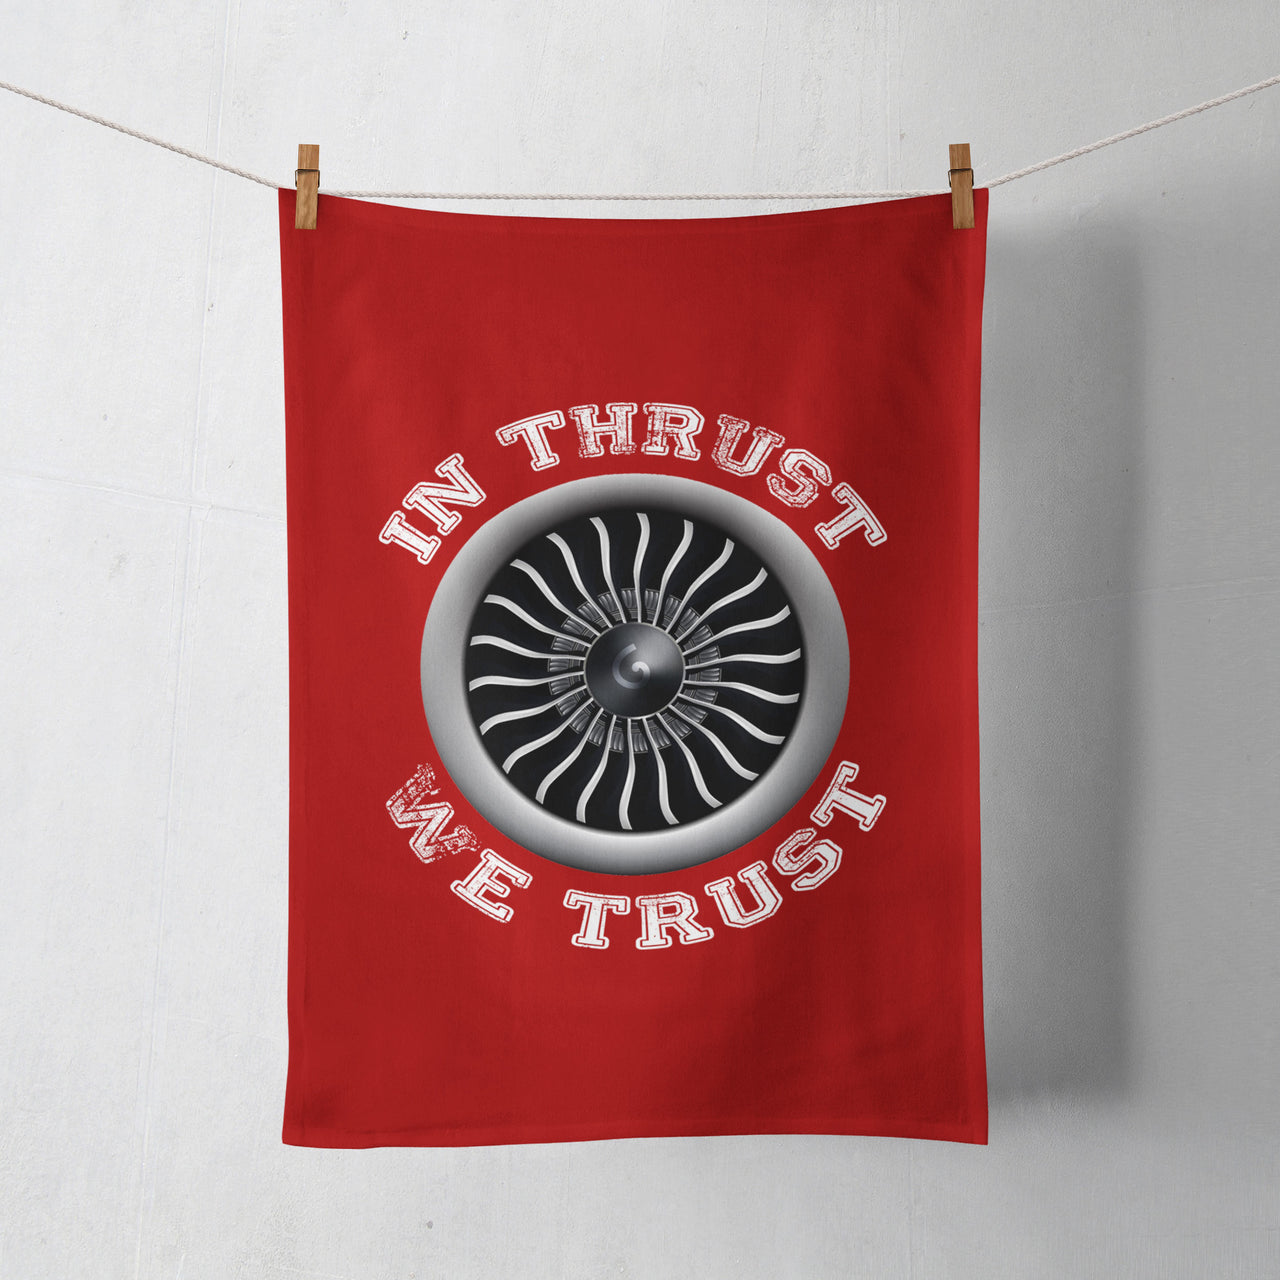 In Thrust We Trust (Vol 2) Designed Towels